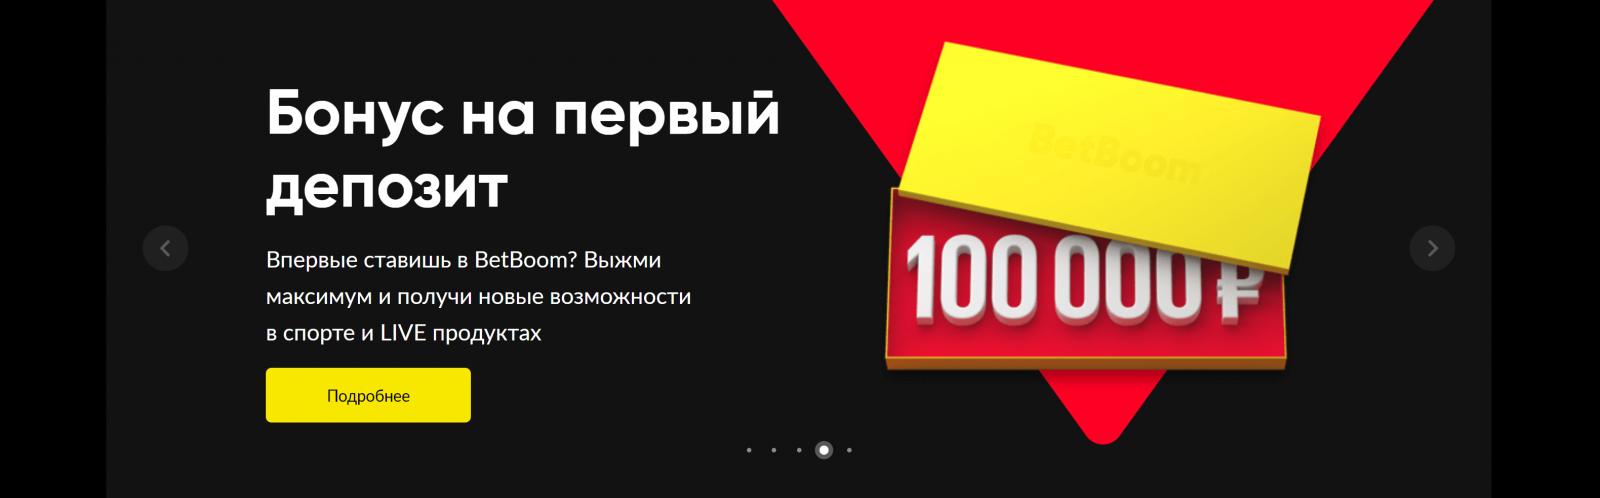 Бетбум бонус при реєстрації 100 000 руб.